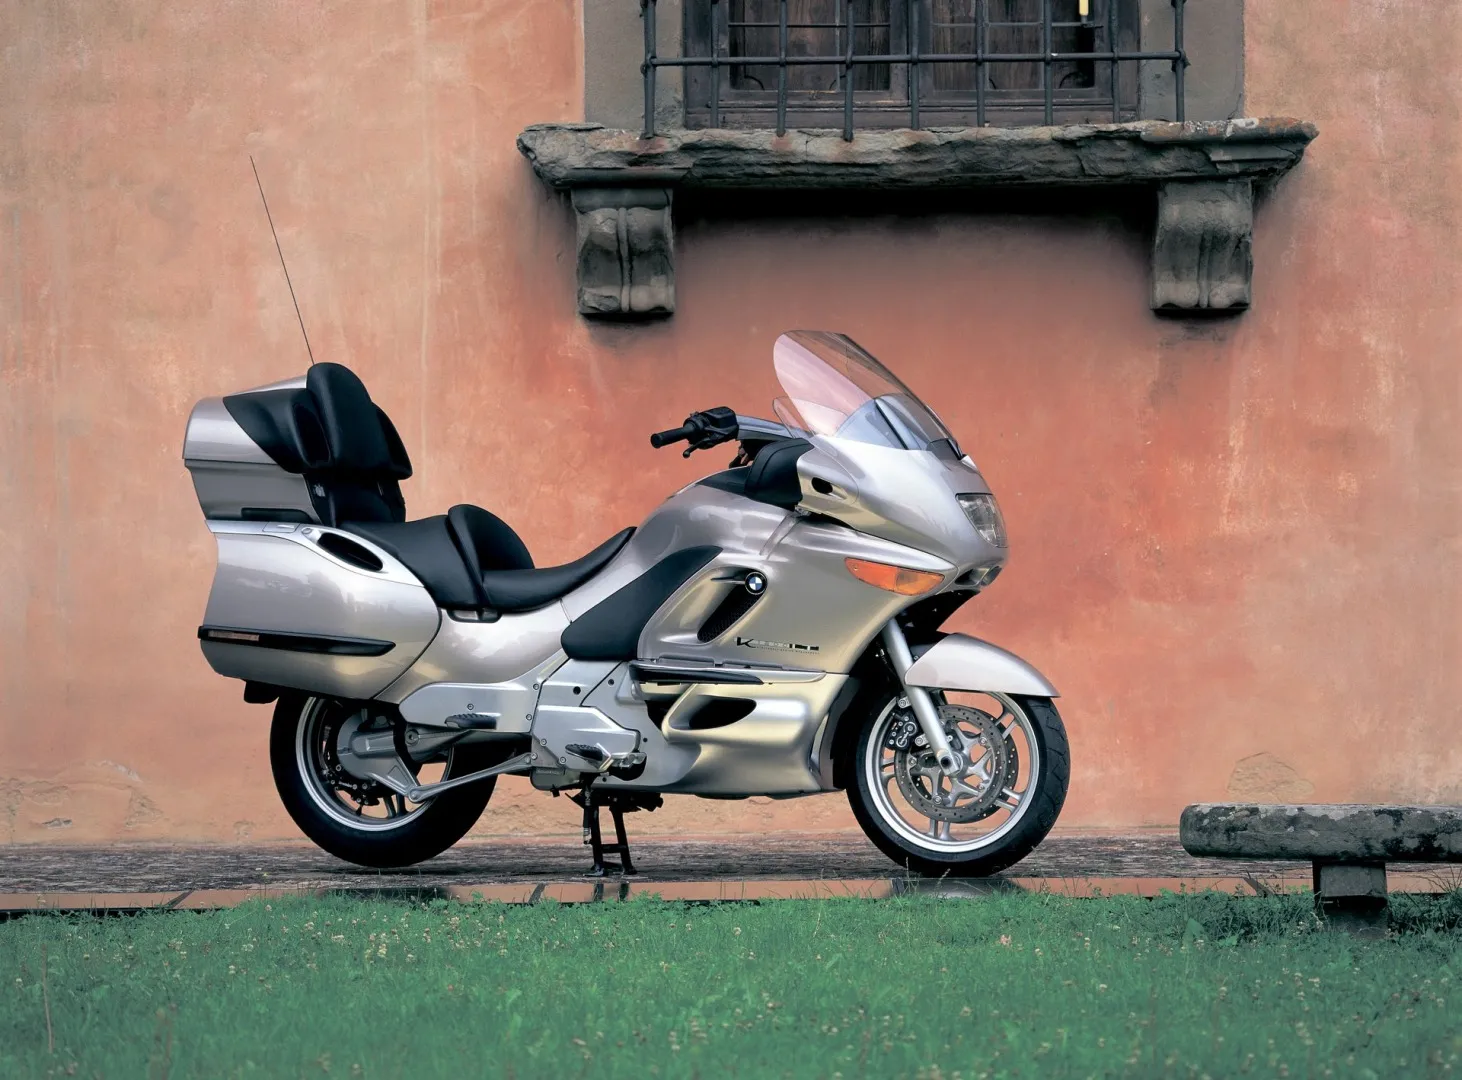 Moto del día: BMW K 1200 LT MK1 (1997-2003)